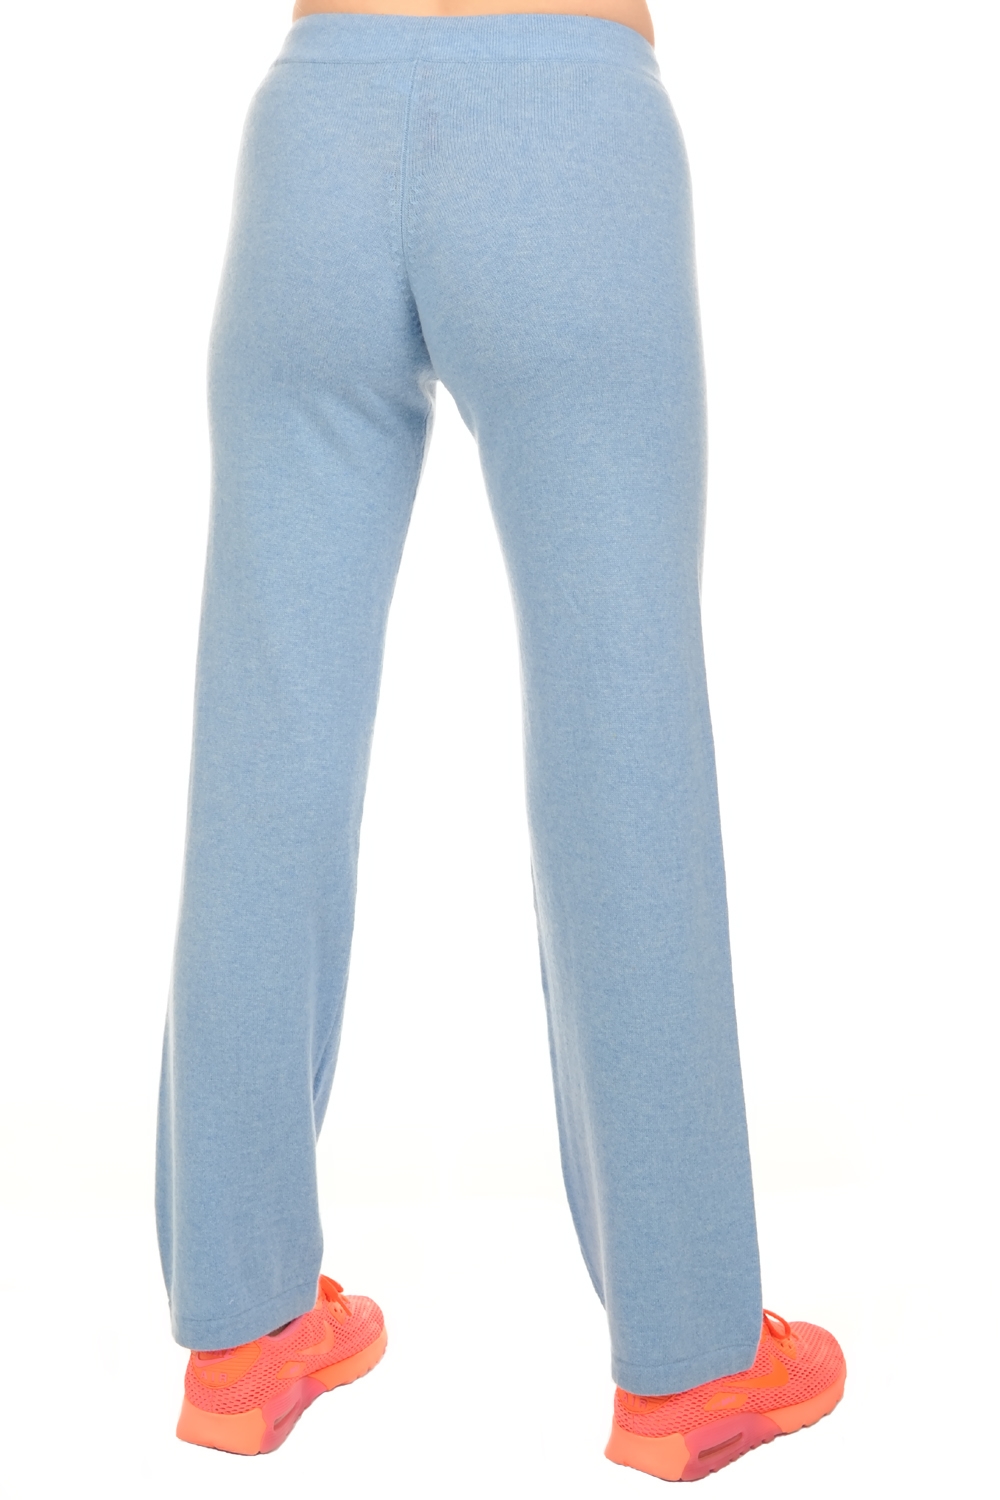 Kasjmier dames kasjmier broeken leggings malice chinees azuur blauw 3xl